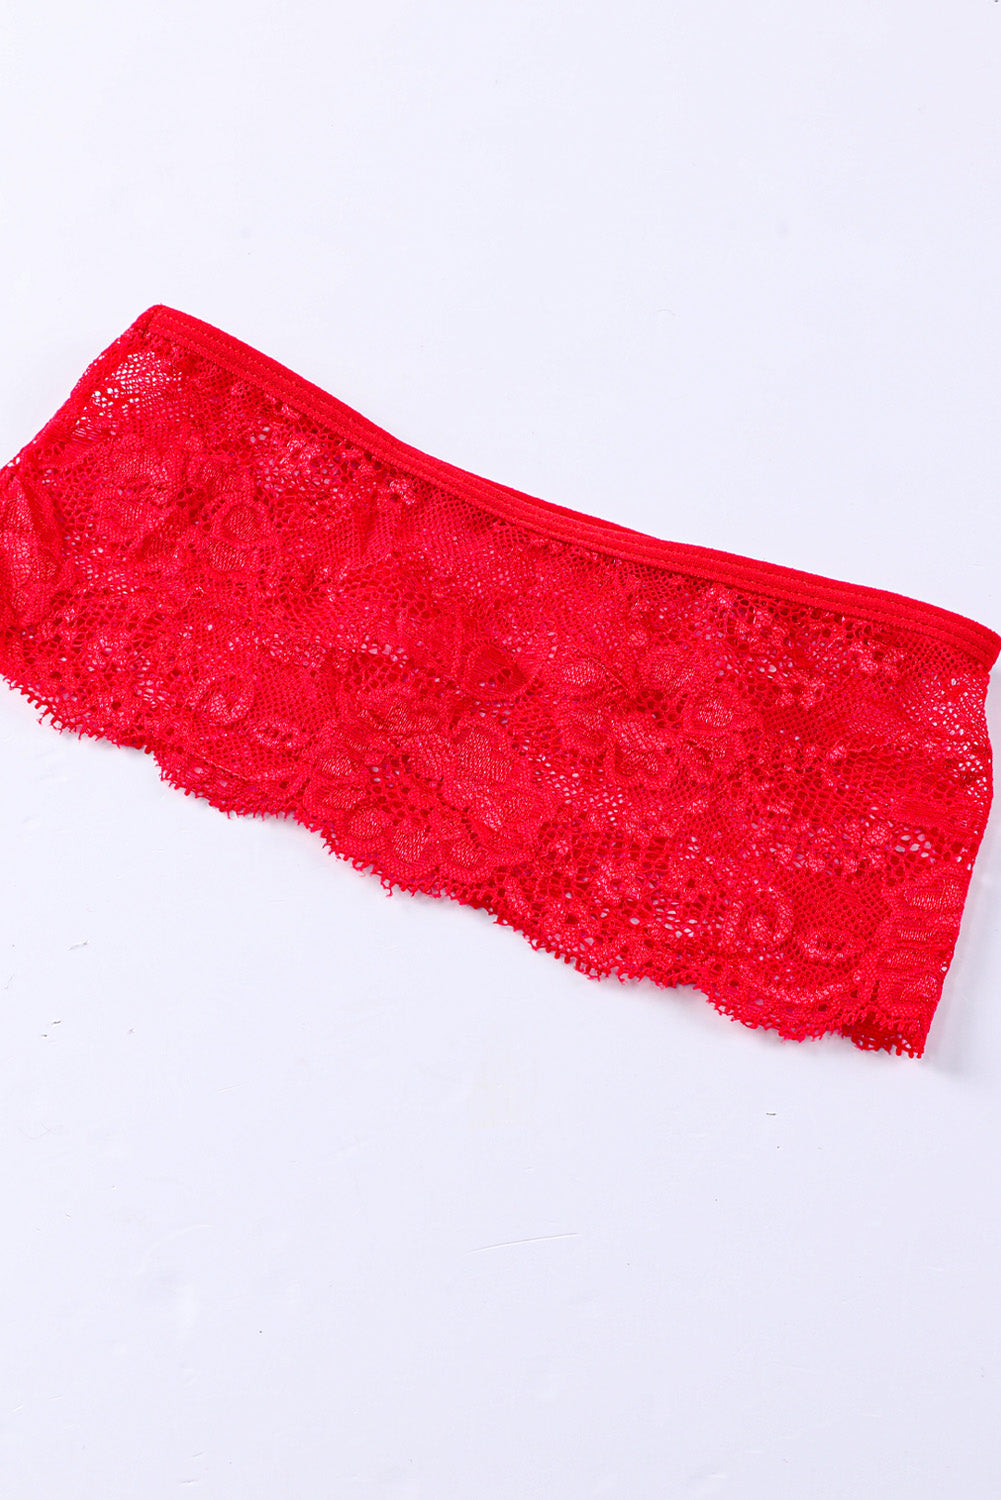 Red Lace Mesh Patchwork Bustier 3pcs Lingerie Set